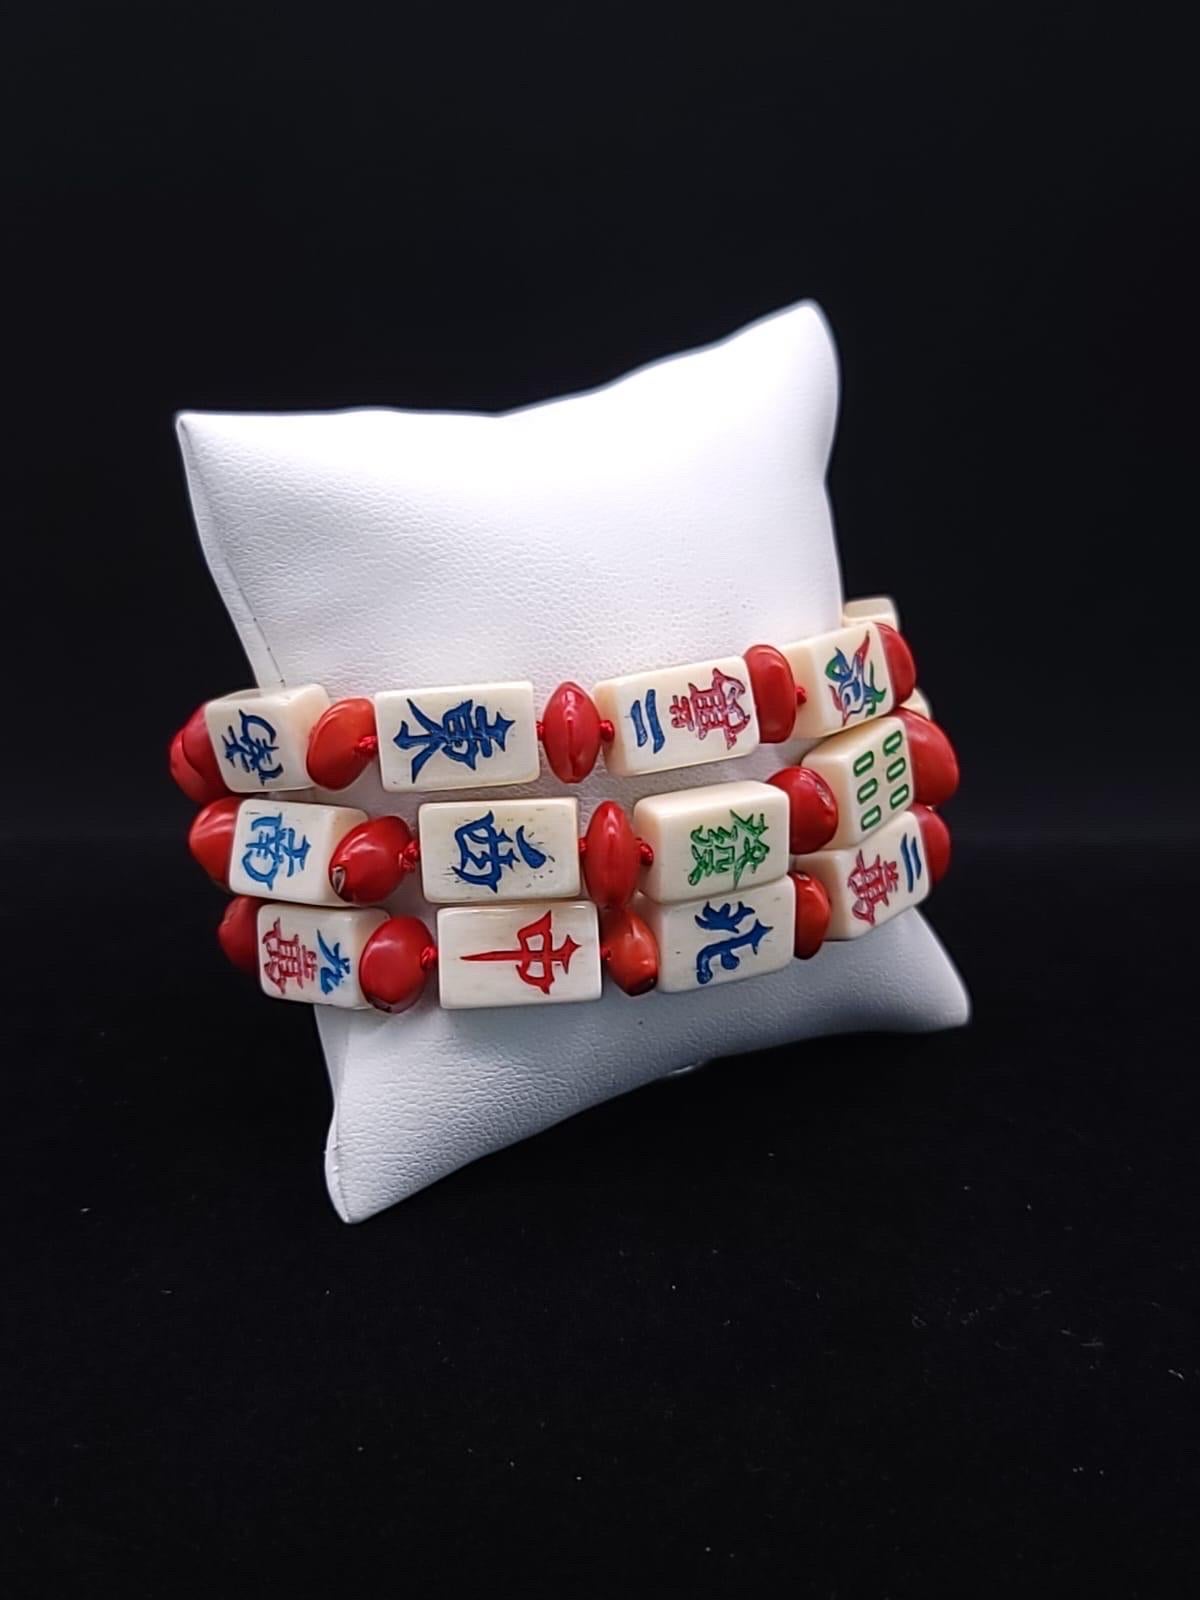 A.Jeschel Stunning mahjong tiles bracelet. 1